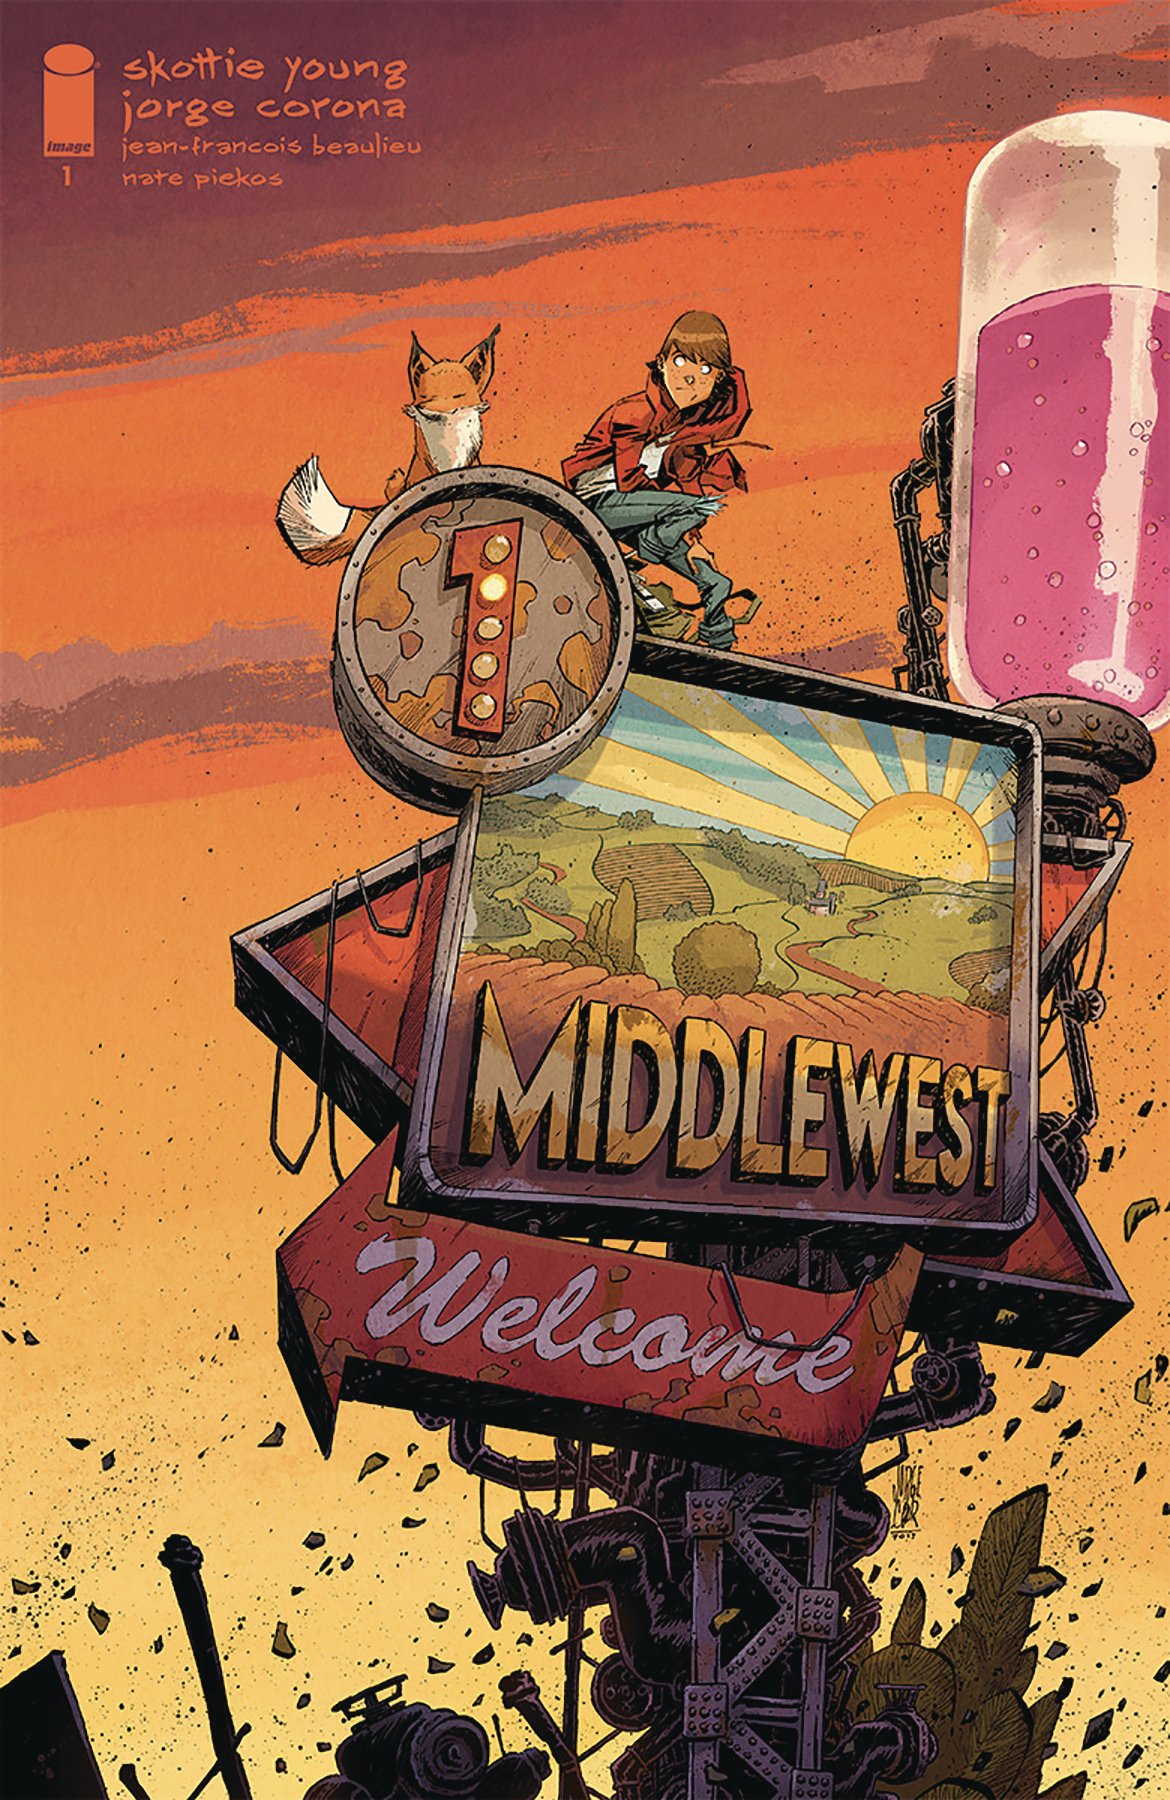 La cover variant del primo numero di Middlewest